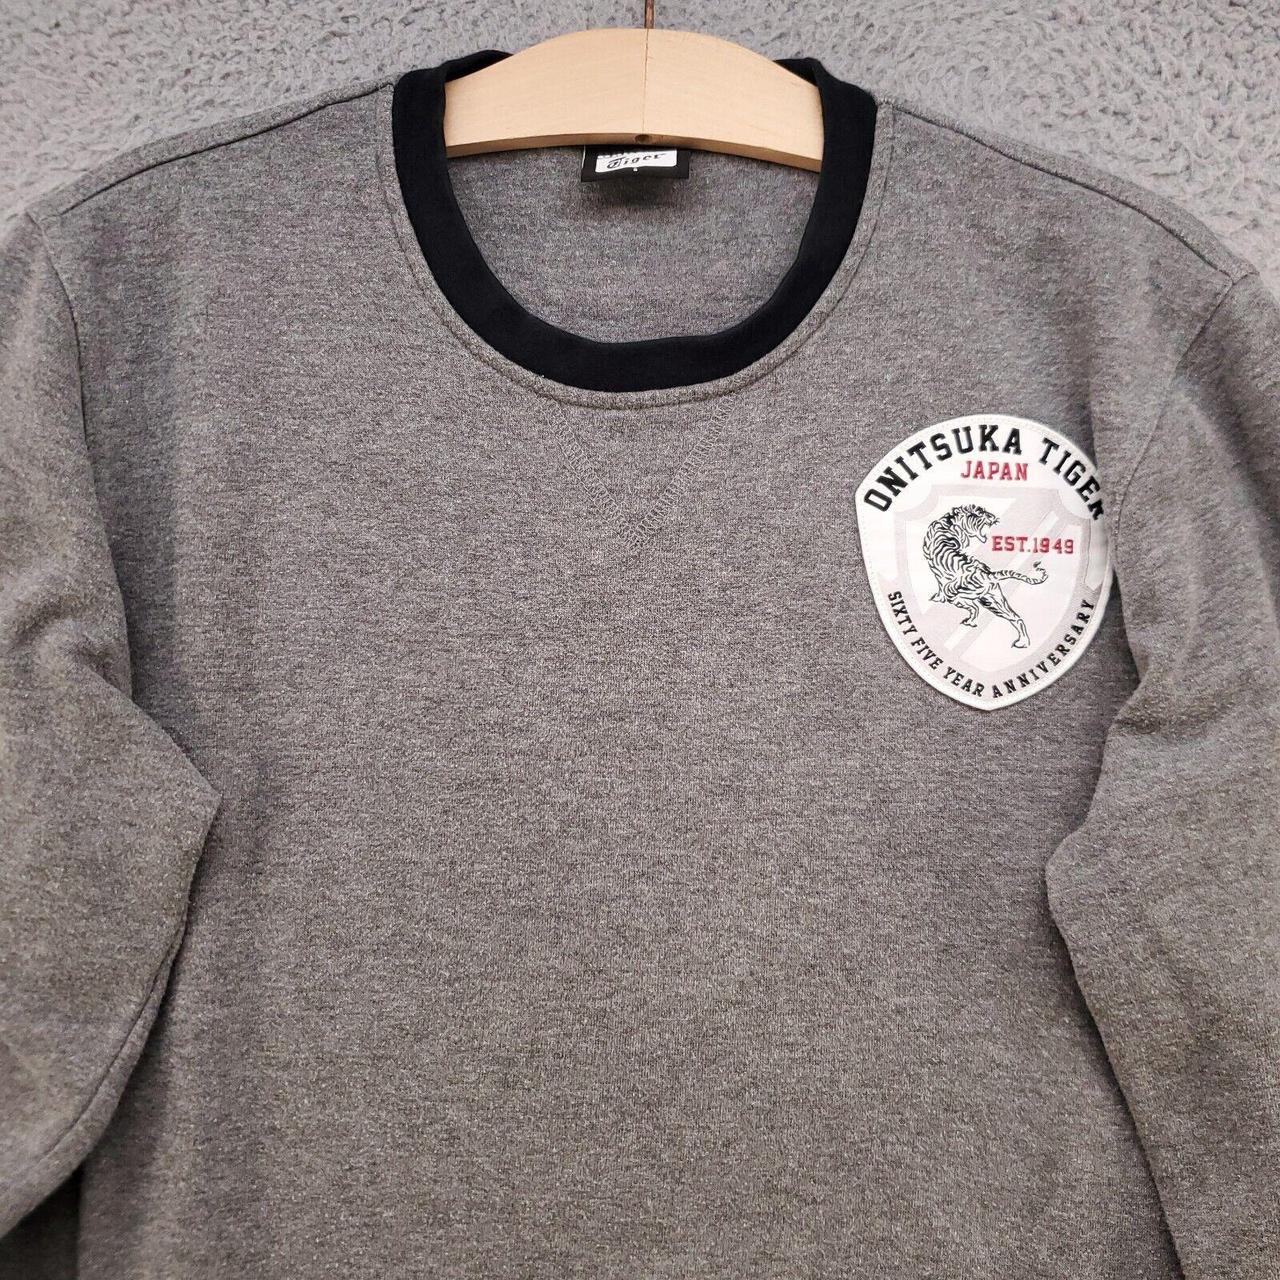 Product Image 2 - Onitsuka Tiger Sweatshirt Mens Small